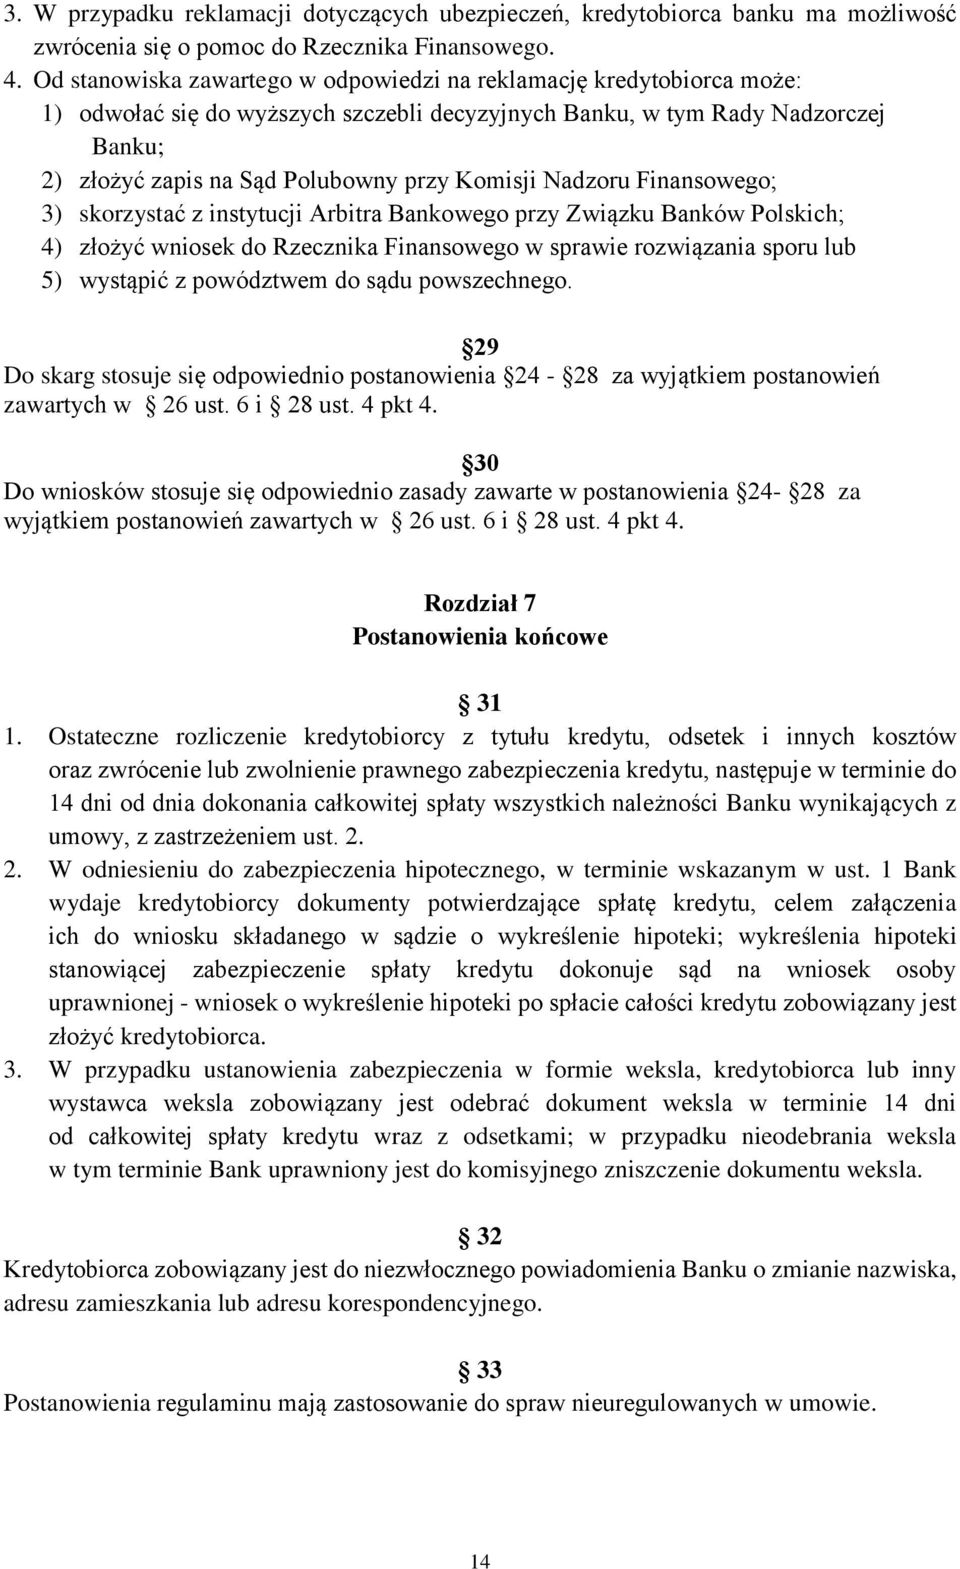 Komisji Nadzoru Finansowego; 3) skorzystać z instytucji Arbitra Bankowego przy Związku Banków Polskich; 4) złożyć wniosek do Rzecznika Finansowego w sprawie rozwiązania sporu lub 5) wystąpić z